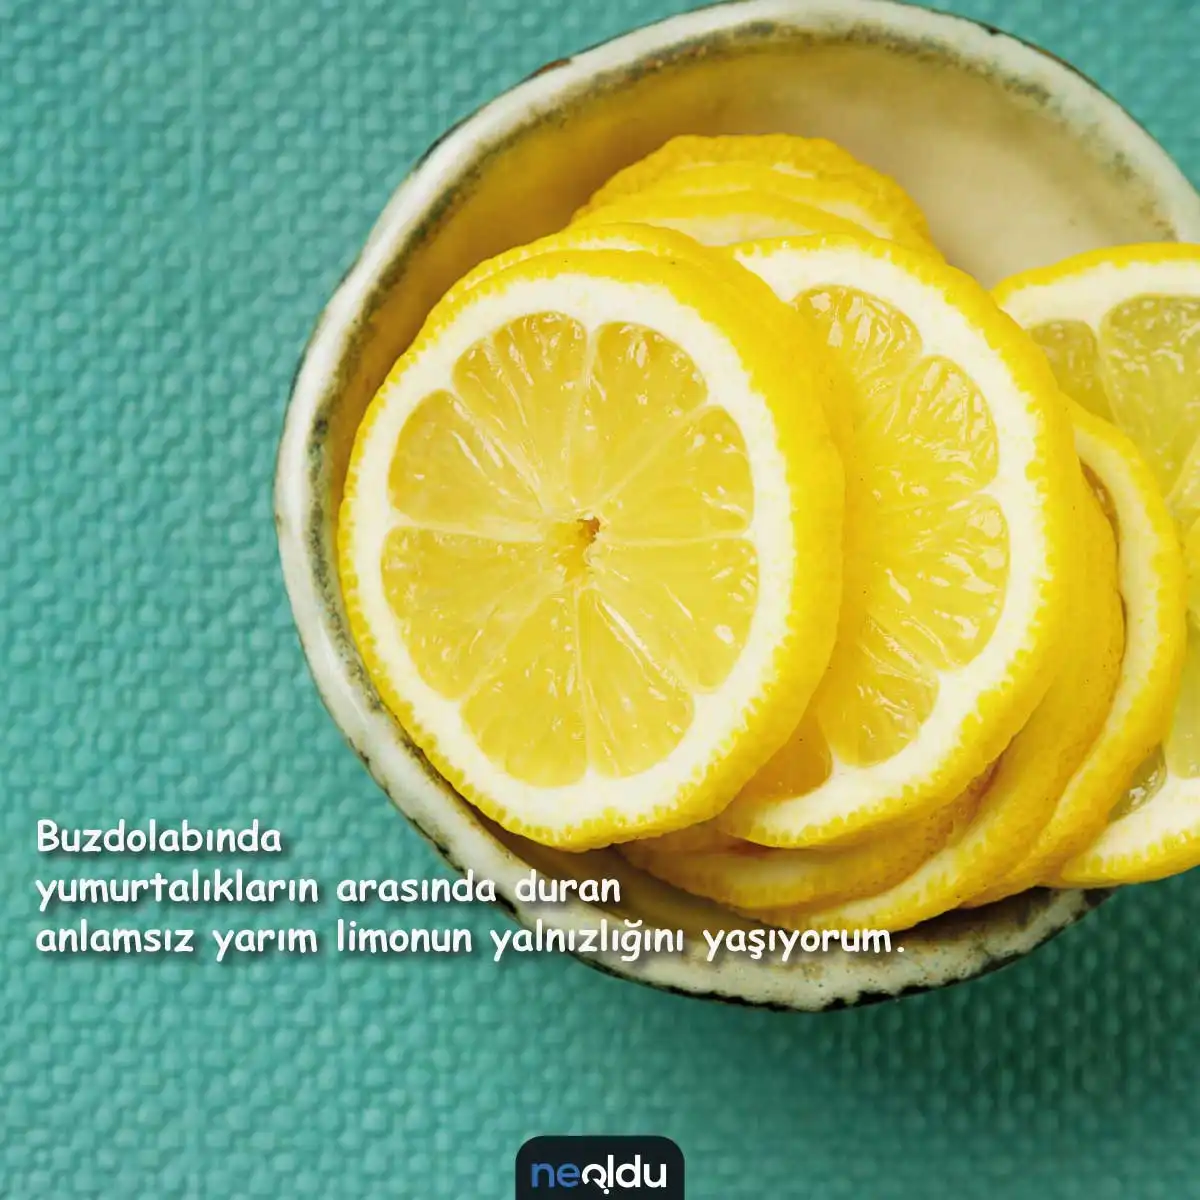 Limon İle İlgili Sözler